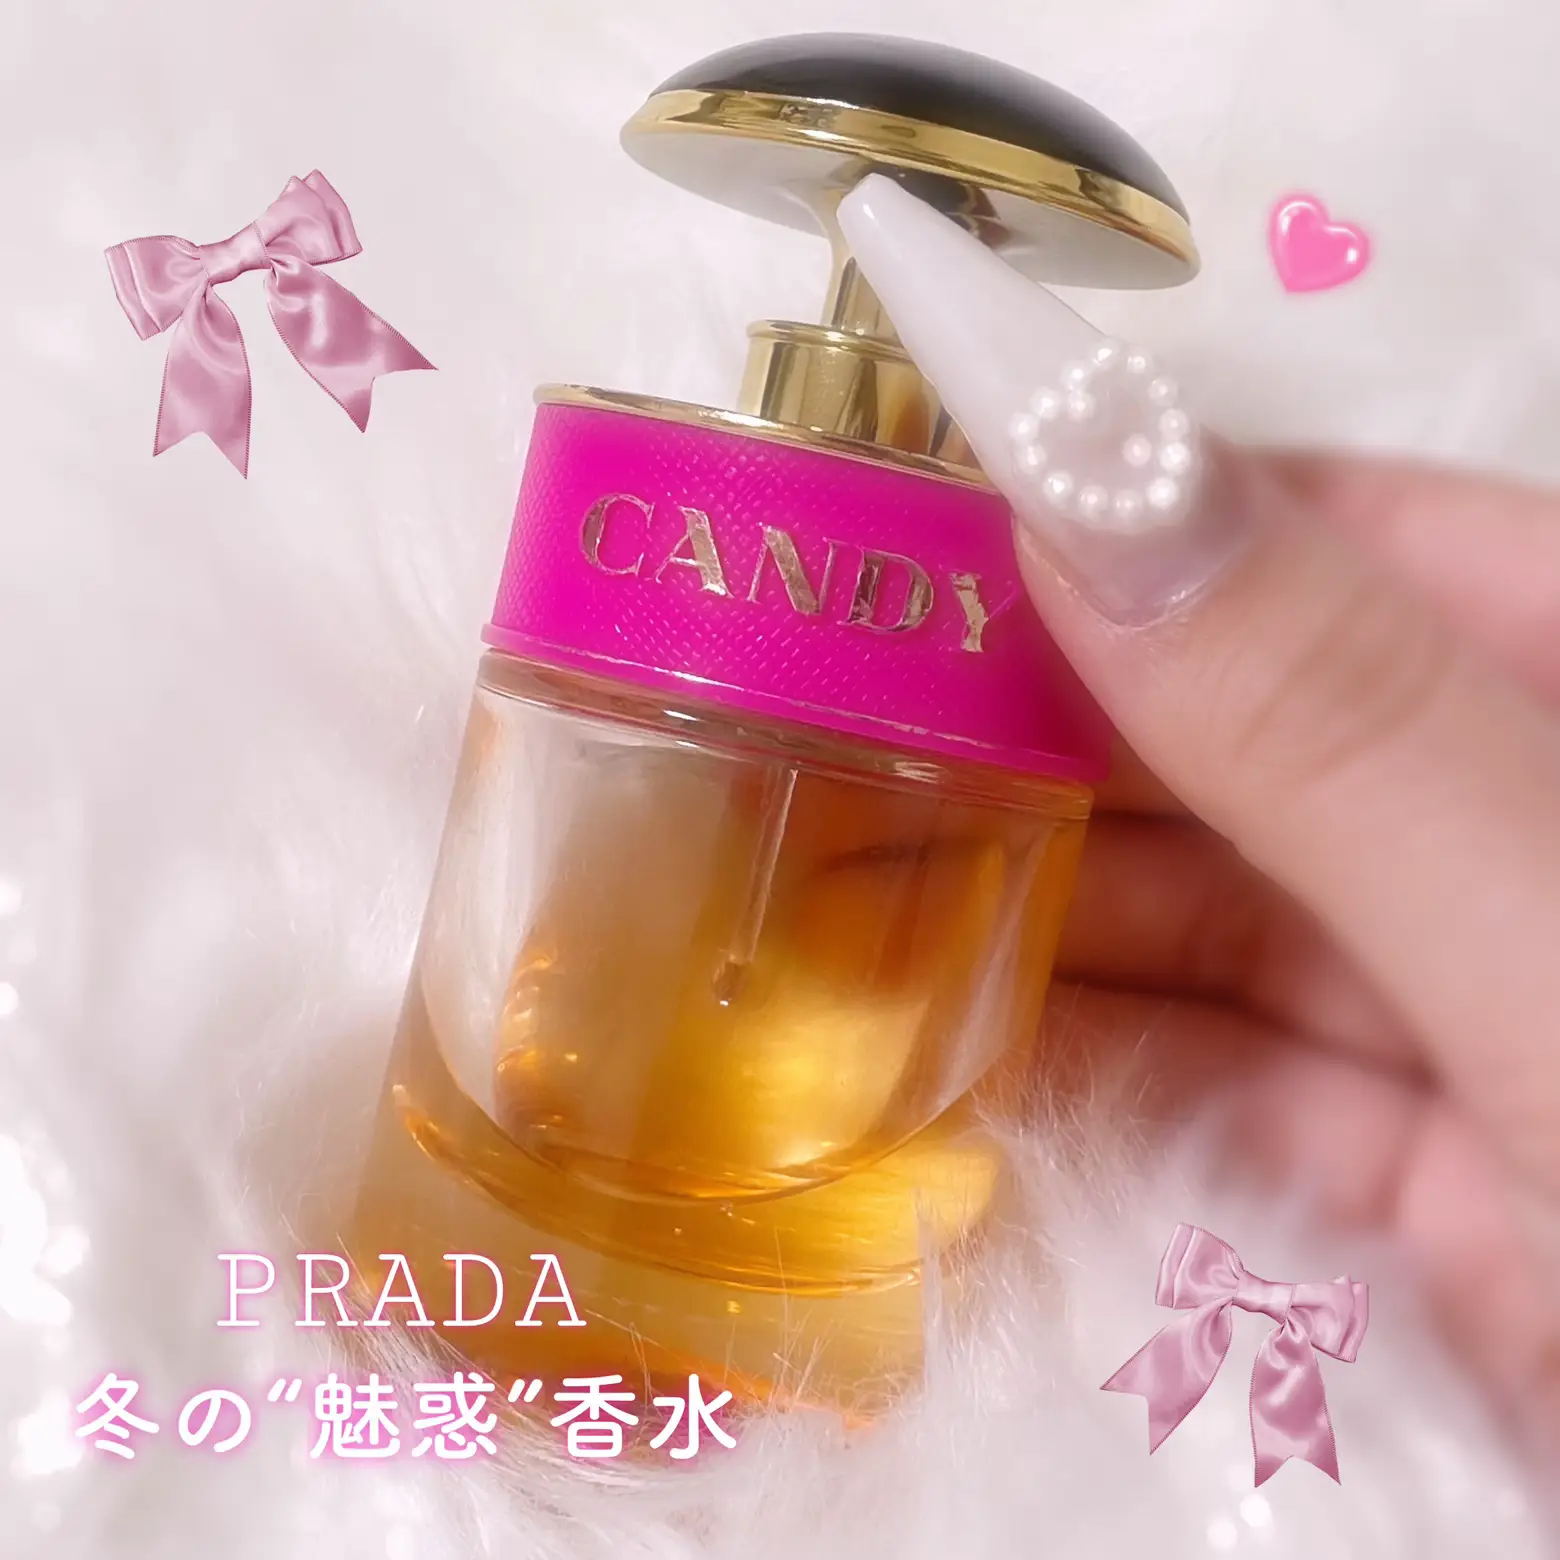 2024年のおすすめ香水 Prada Paradoxeのアイデア20選